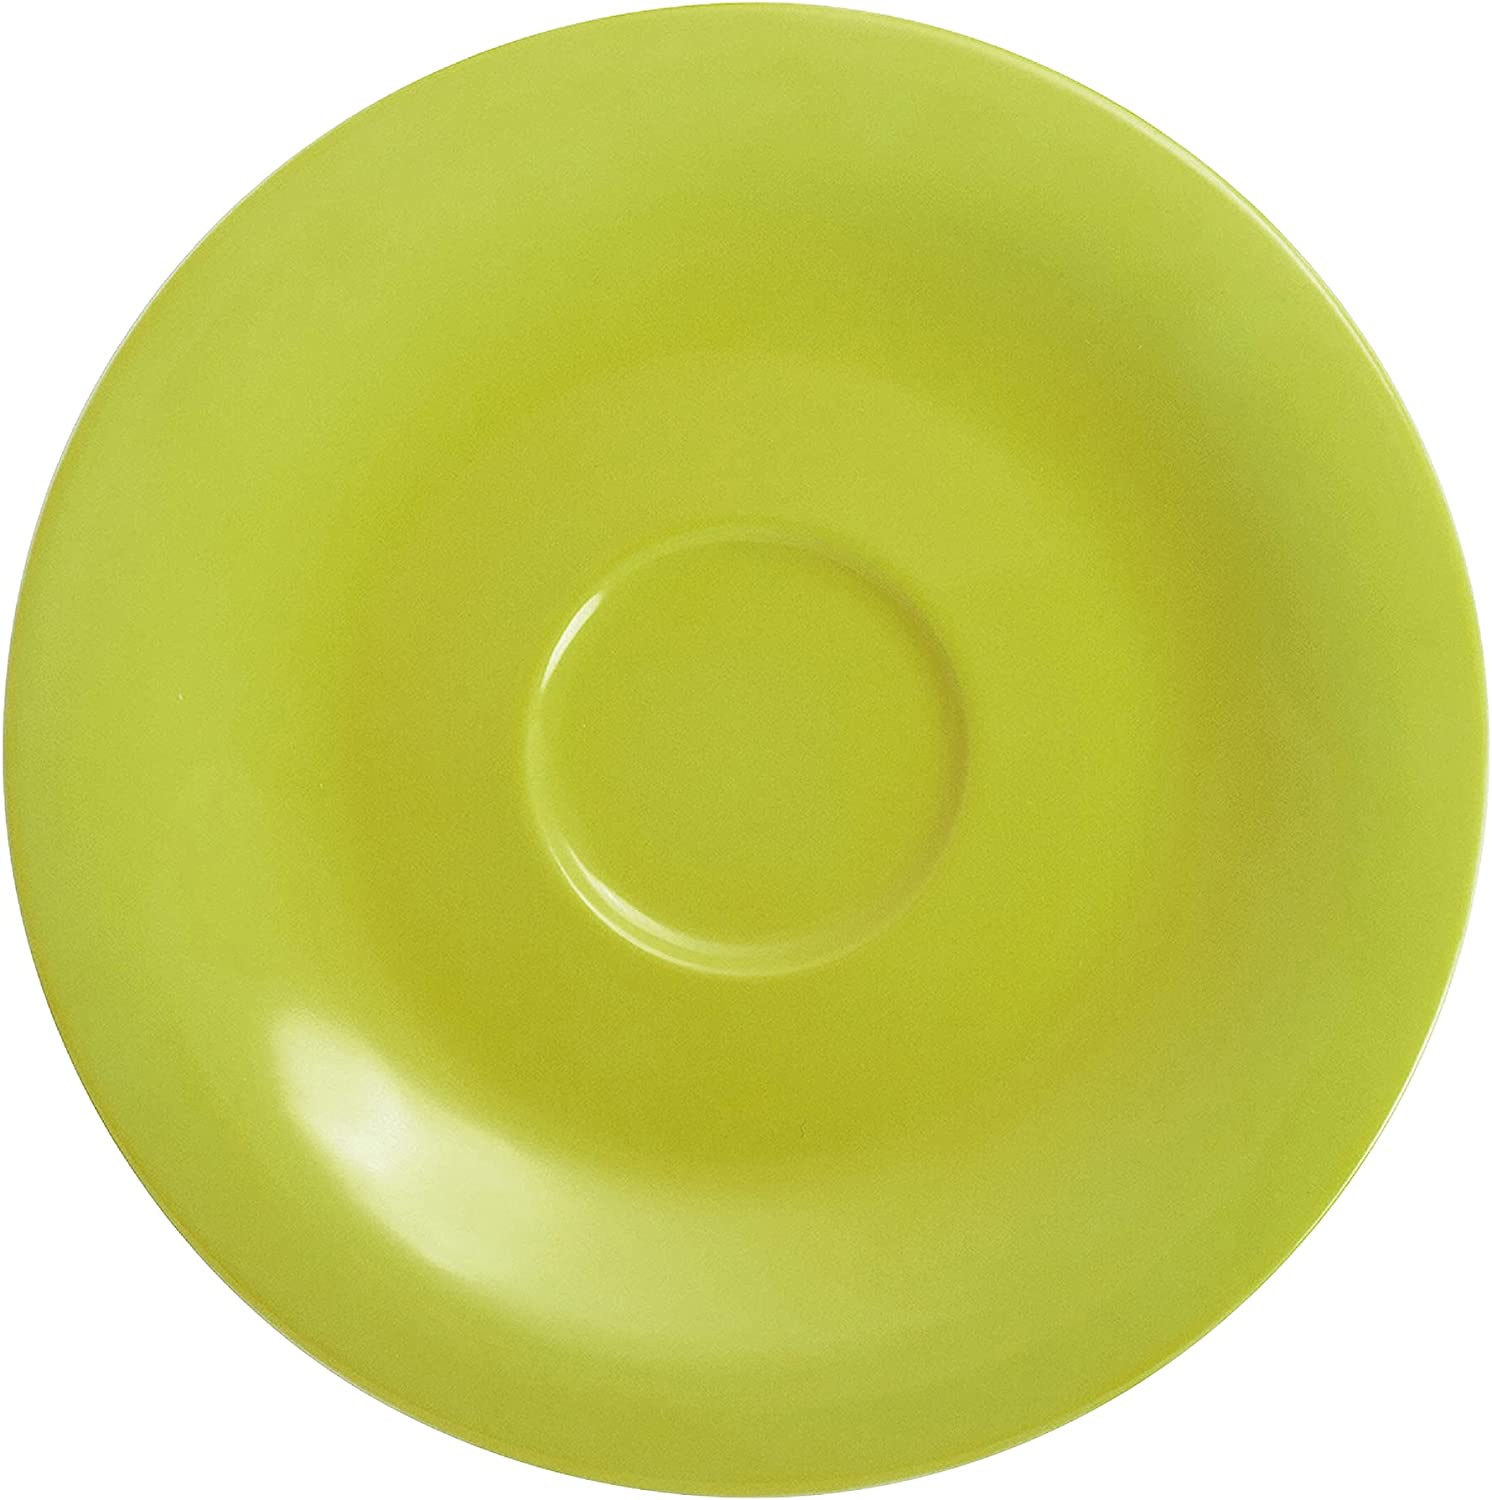 KAHLA 8.07-inch Pronto Saucer Plate, Porcelain, Lemon Yellow, 12 cm, 203501 A72456 °C